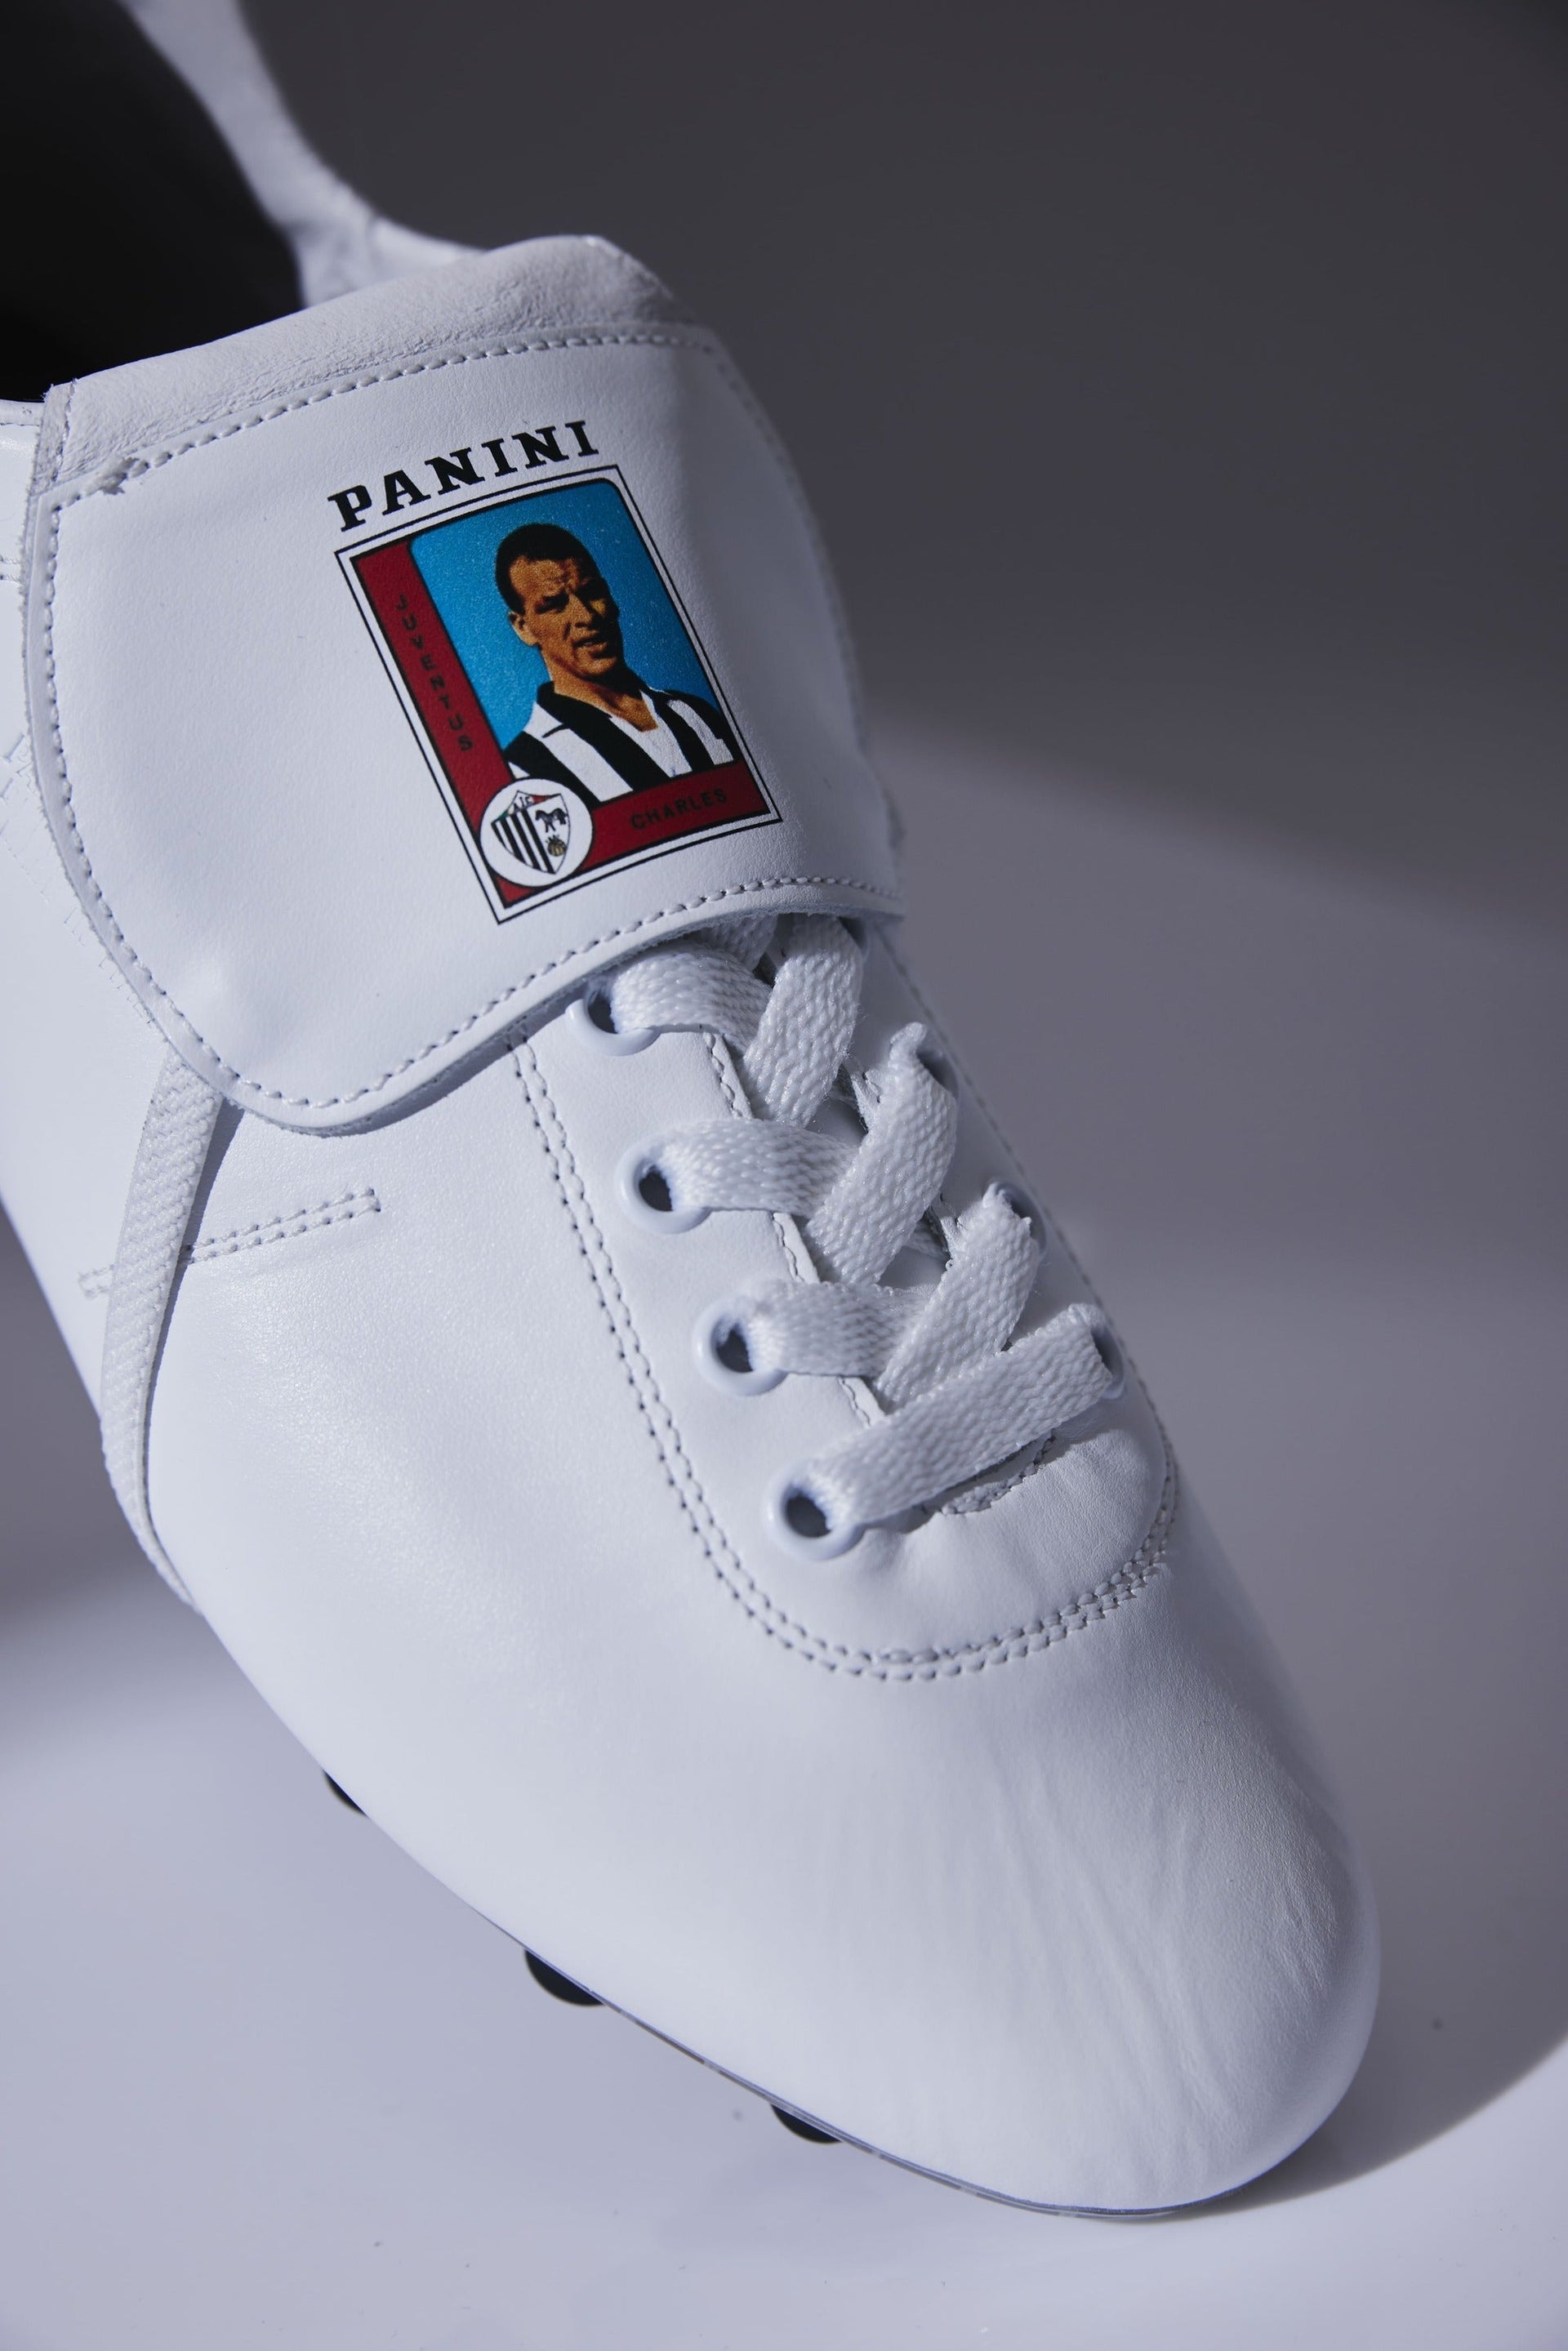 Scarpe da calcio Lazzarini in pelle bianca Limited Edition x Panini